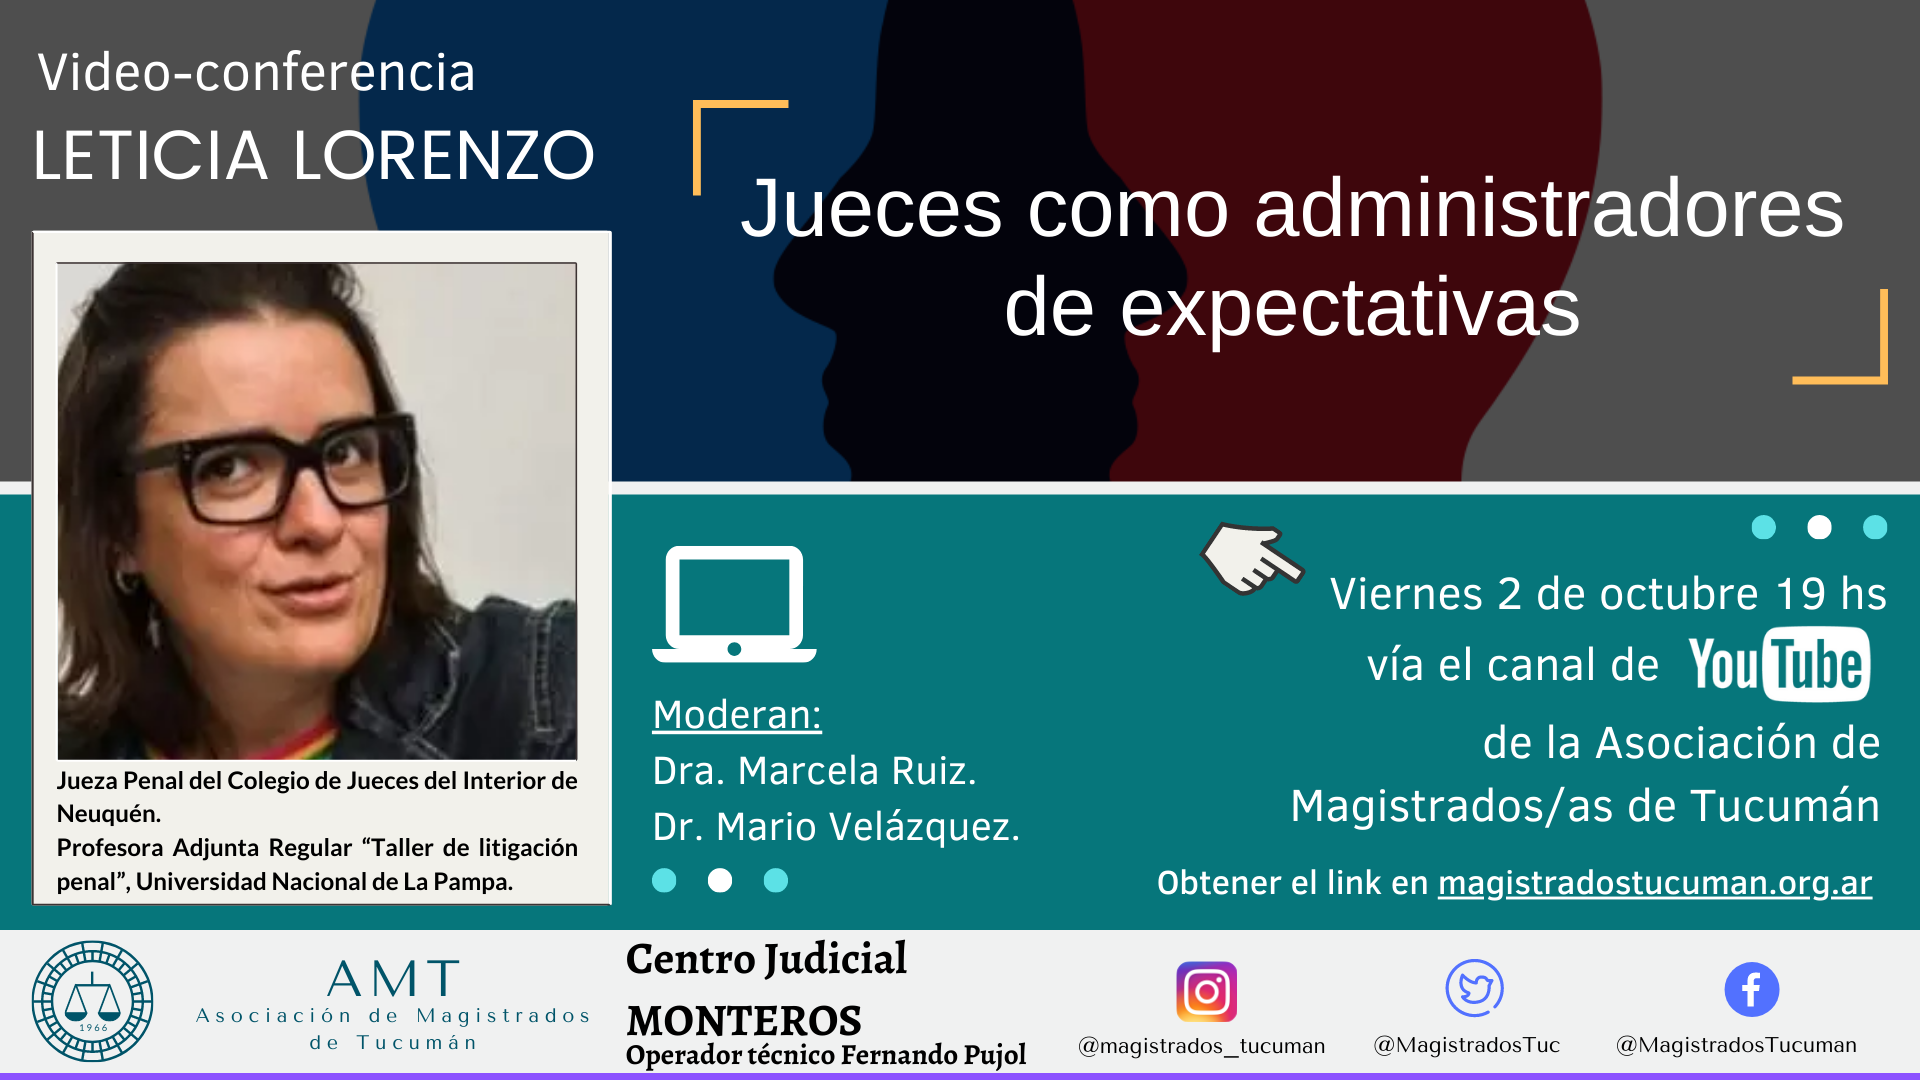 Vuelva a ver la conferencia de Leticia Lorenzo «Jueces como administradores de expectativas»